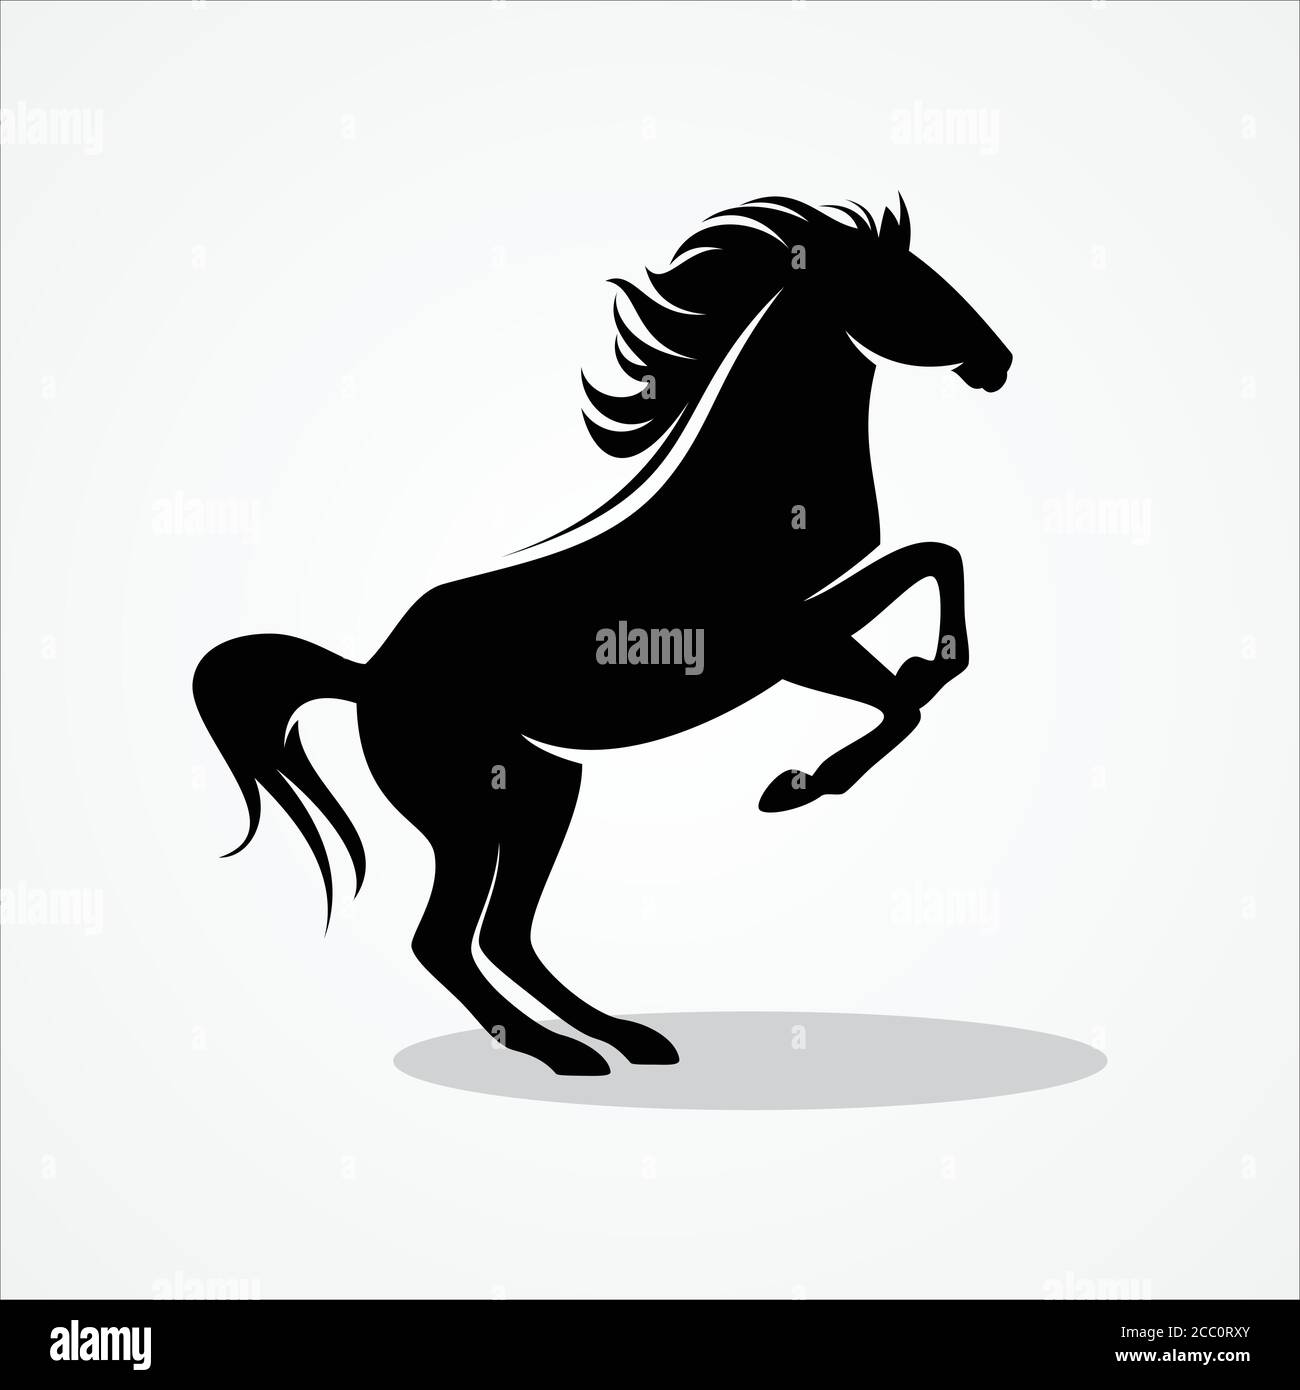 Pferd steht auf zwei Pfoten Symbol für elemen Design. Silhouette Pferd für Element Design. Vektorgrafik EPS.8 EPS.10 Stock Vektor